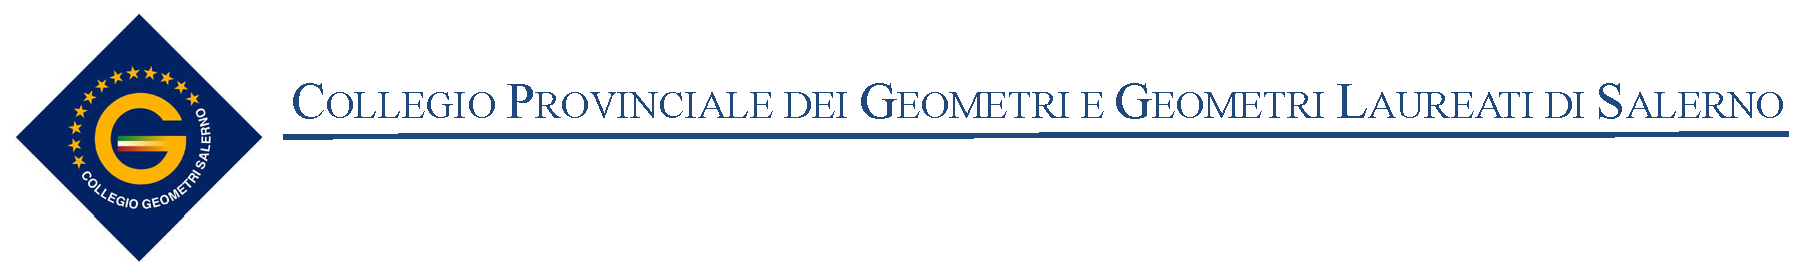 Collegio Provinciale Geometri e Geometri Laureati di Salerno